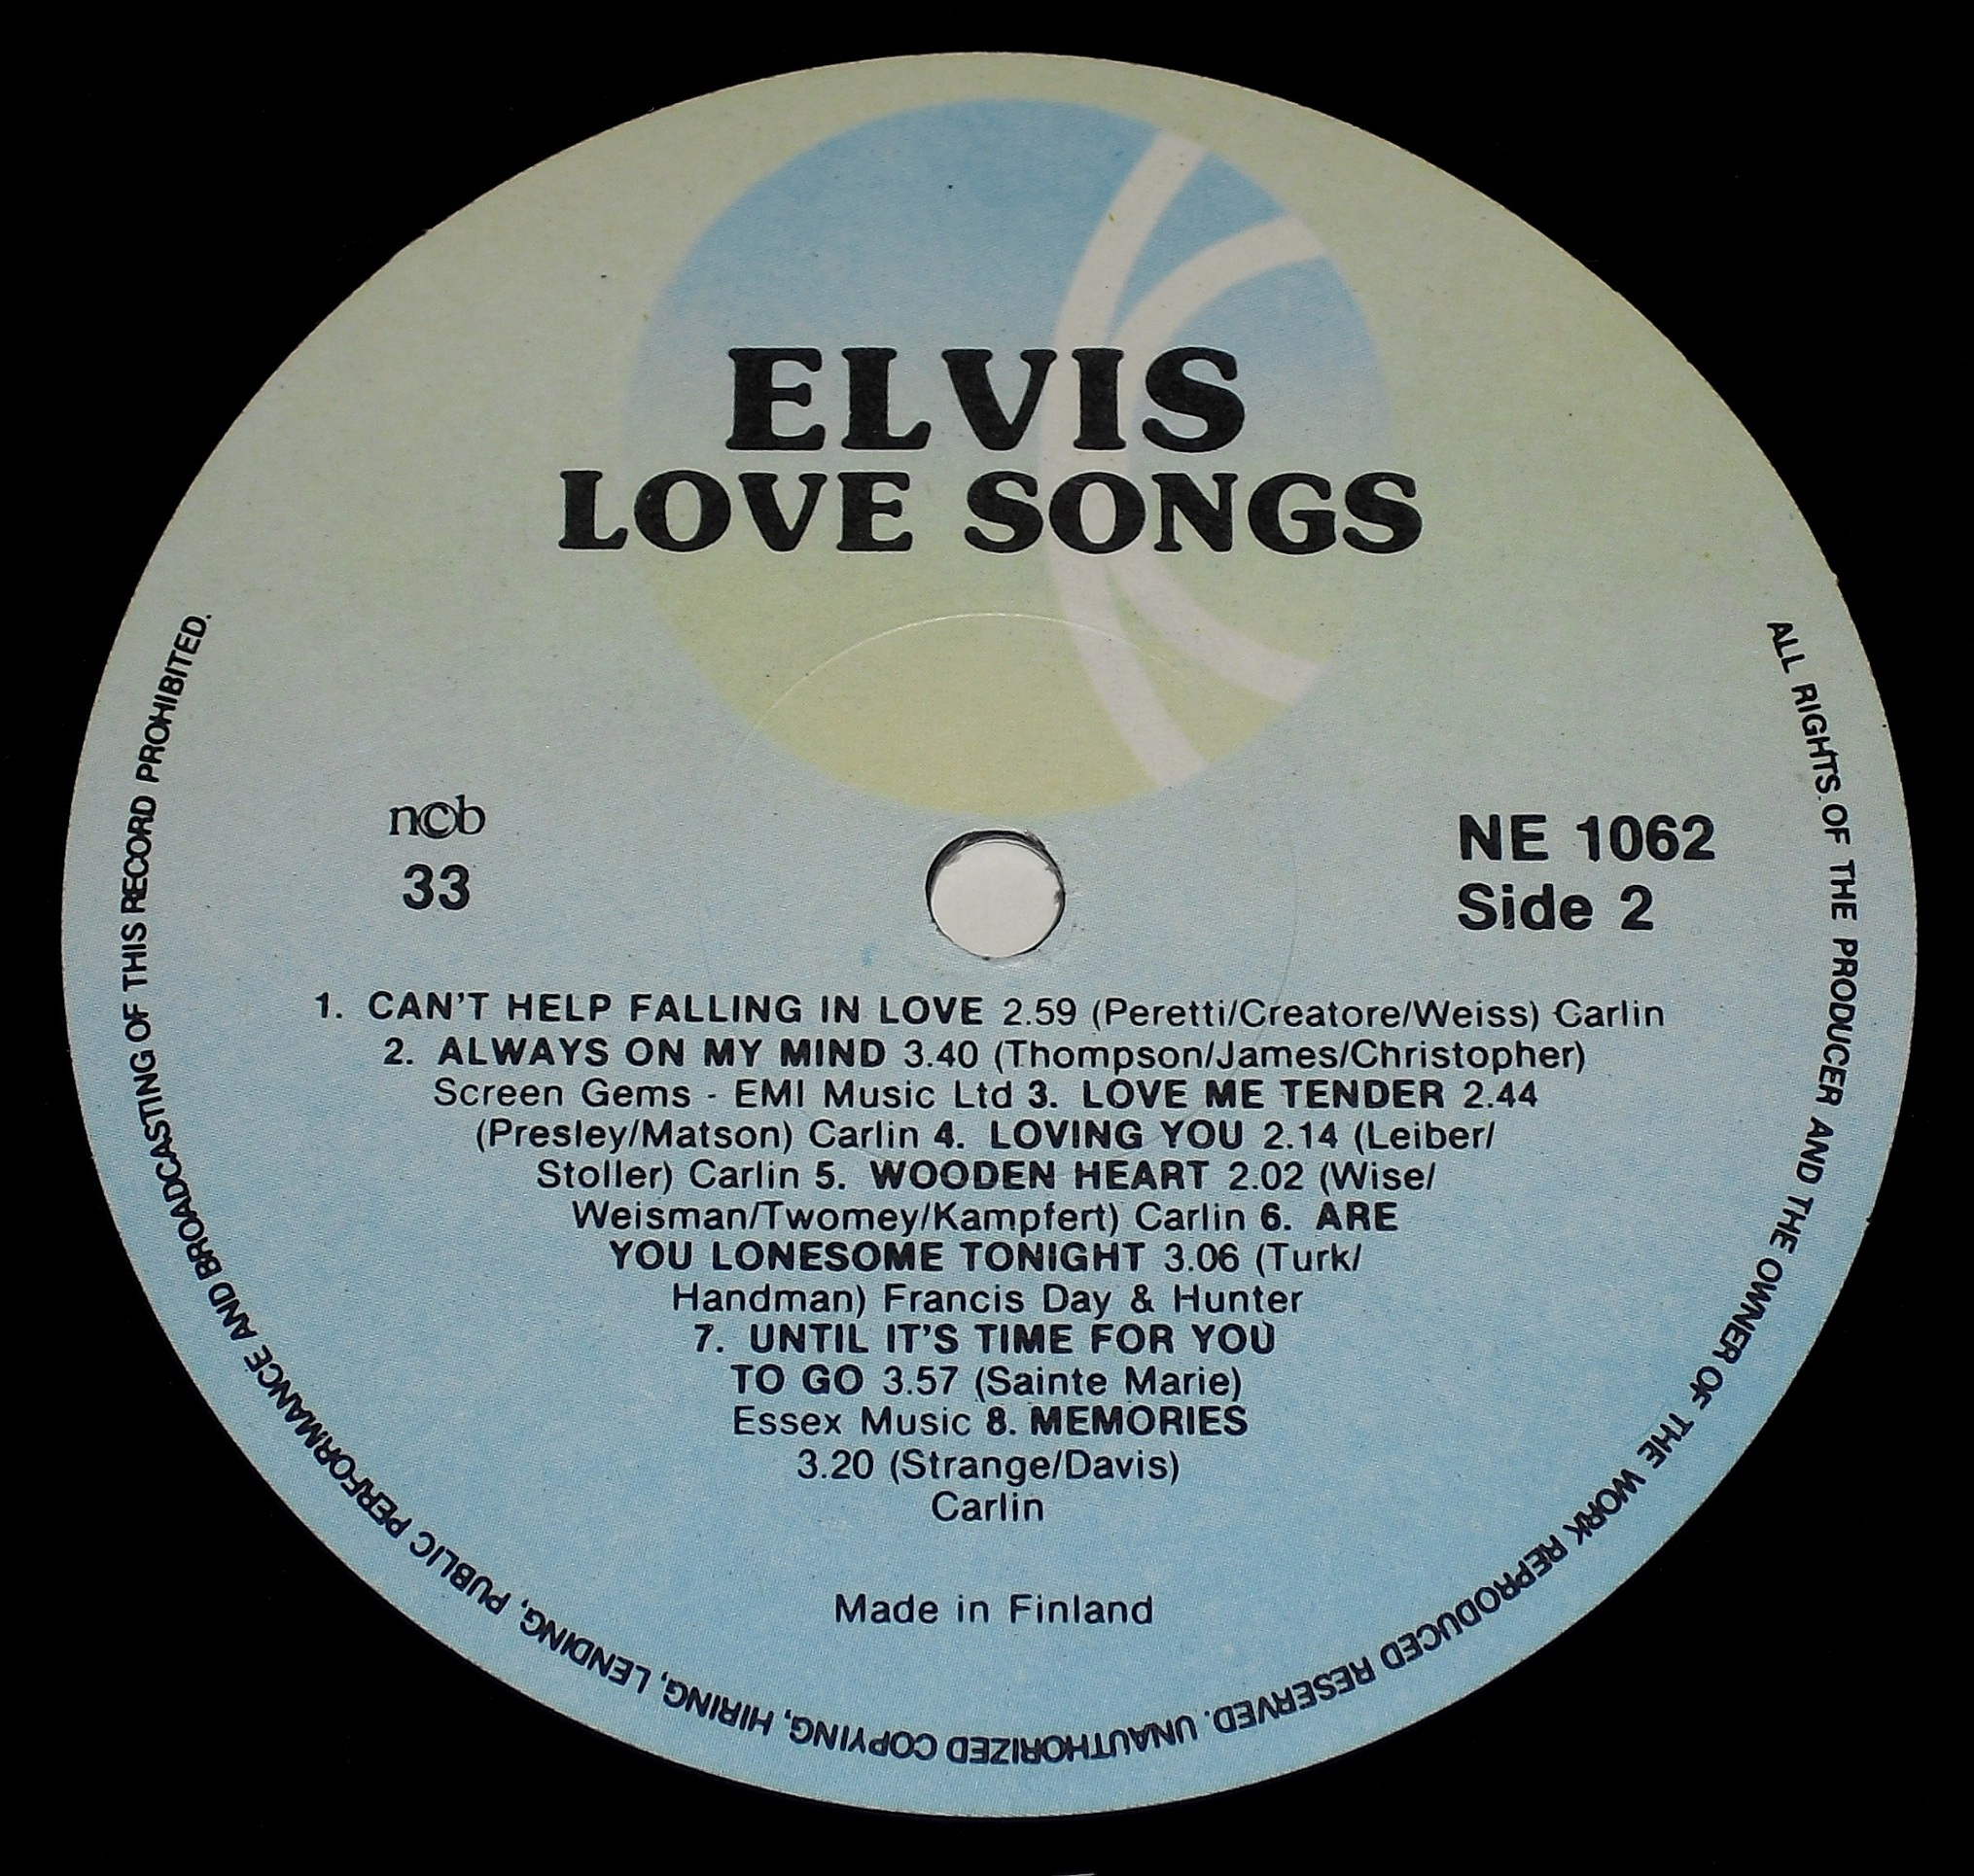 Finnland - ELVIS LOVE SONGS 03s23sqi9